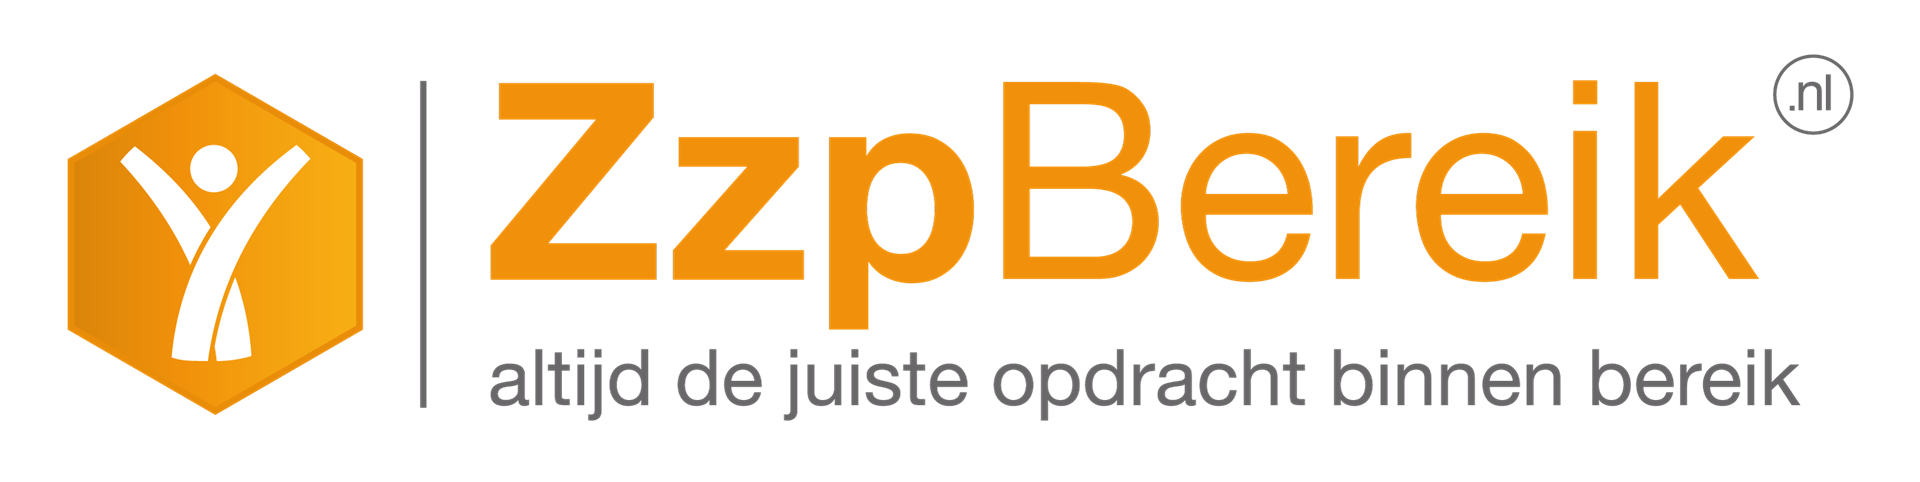 ZzpBereik Logo